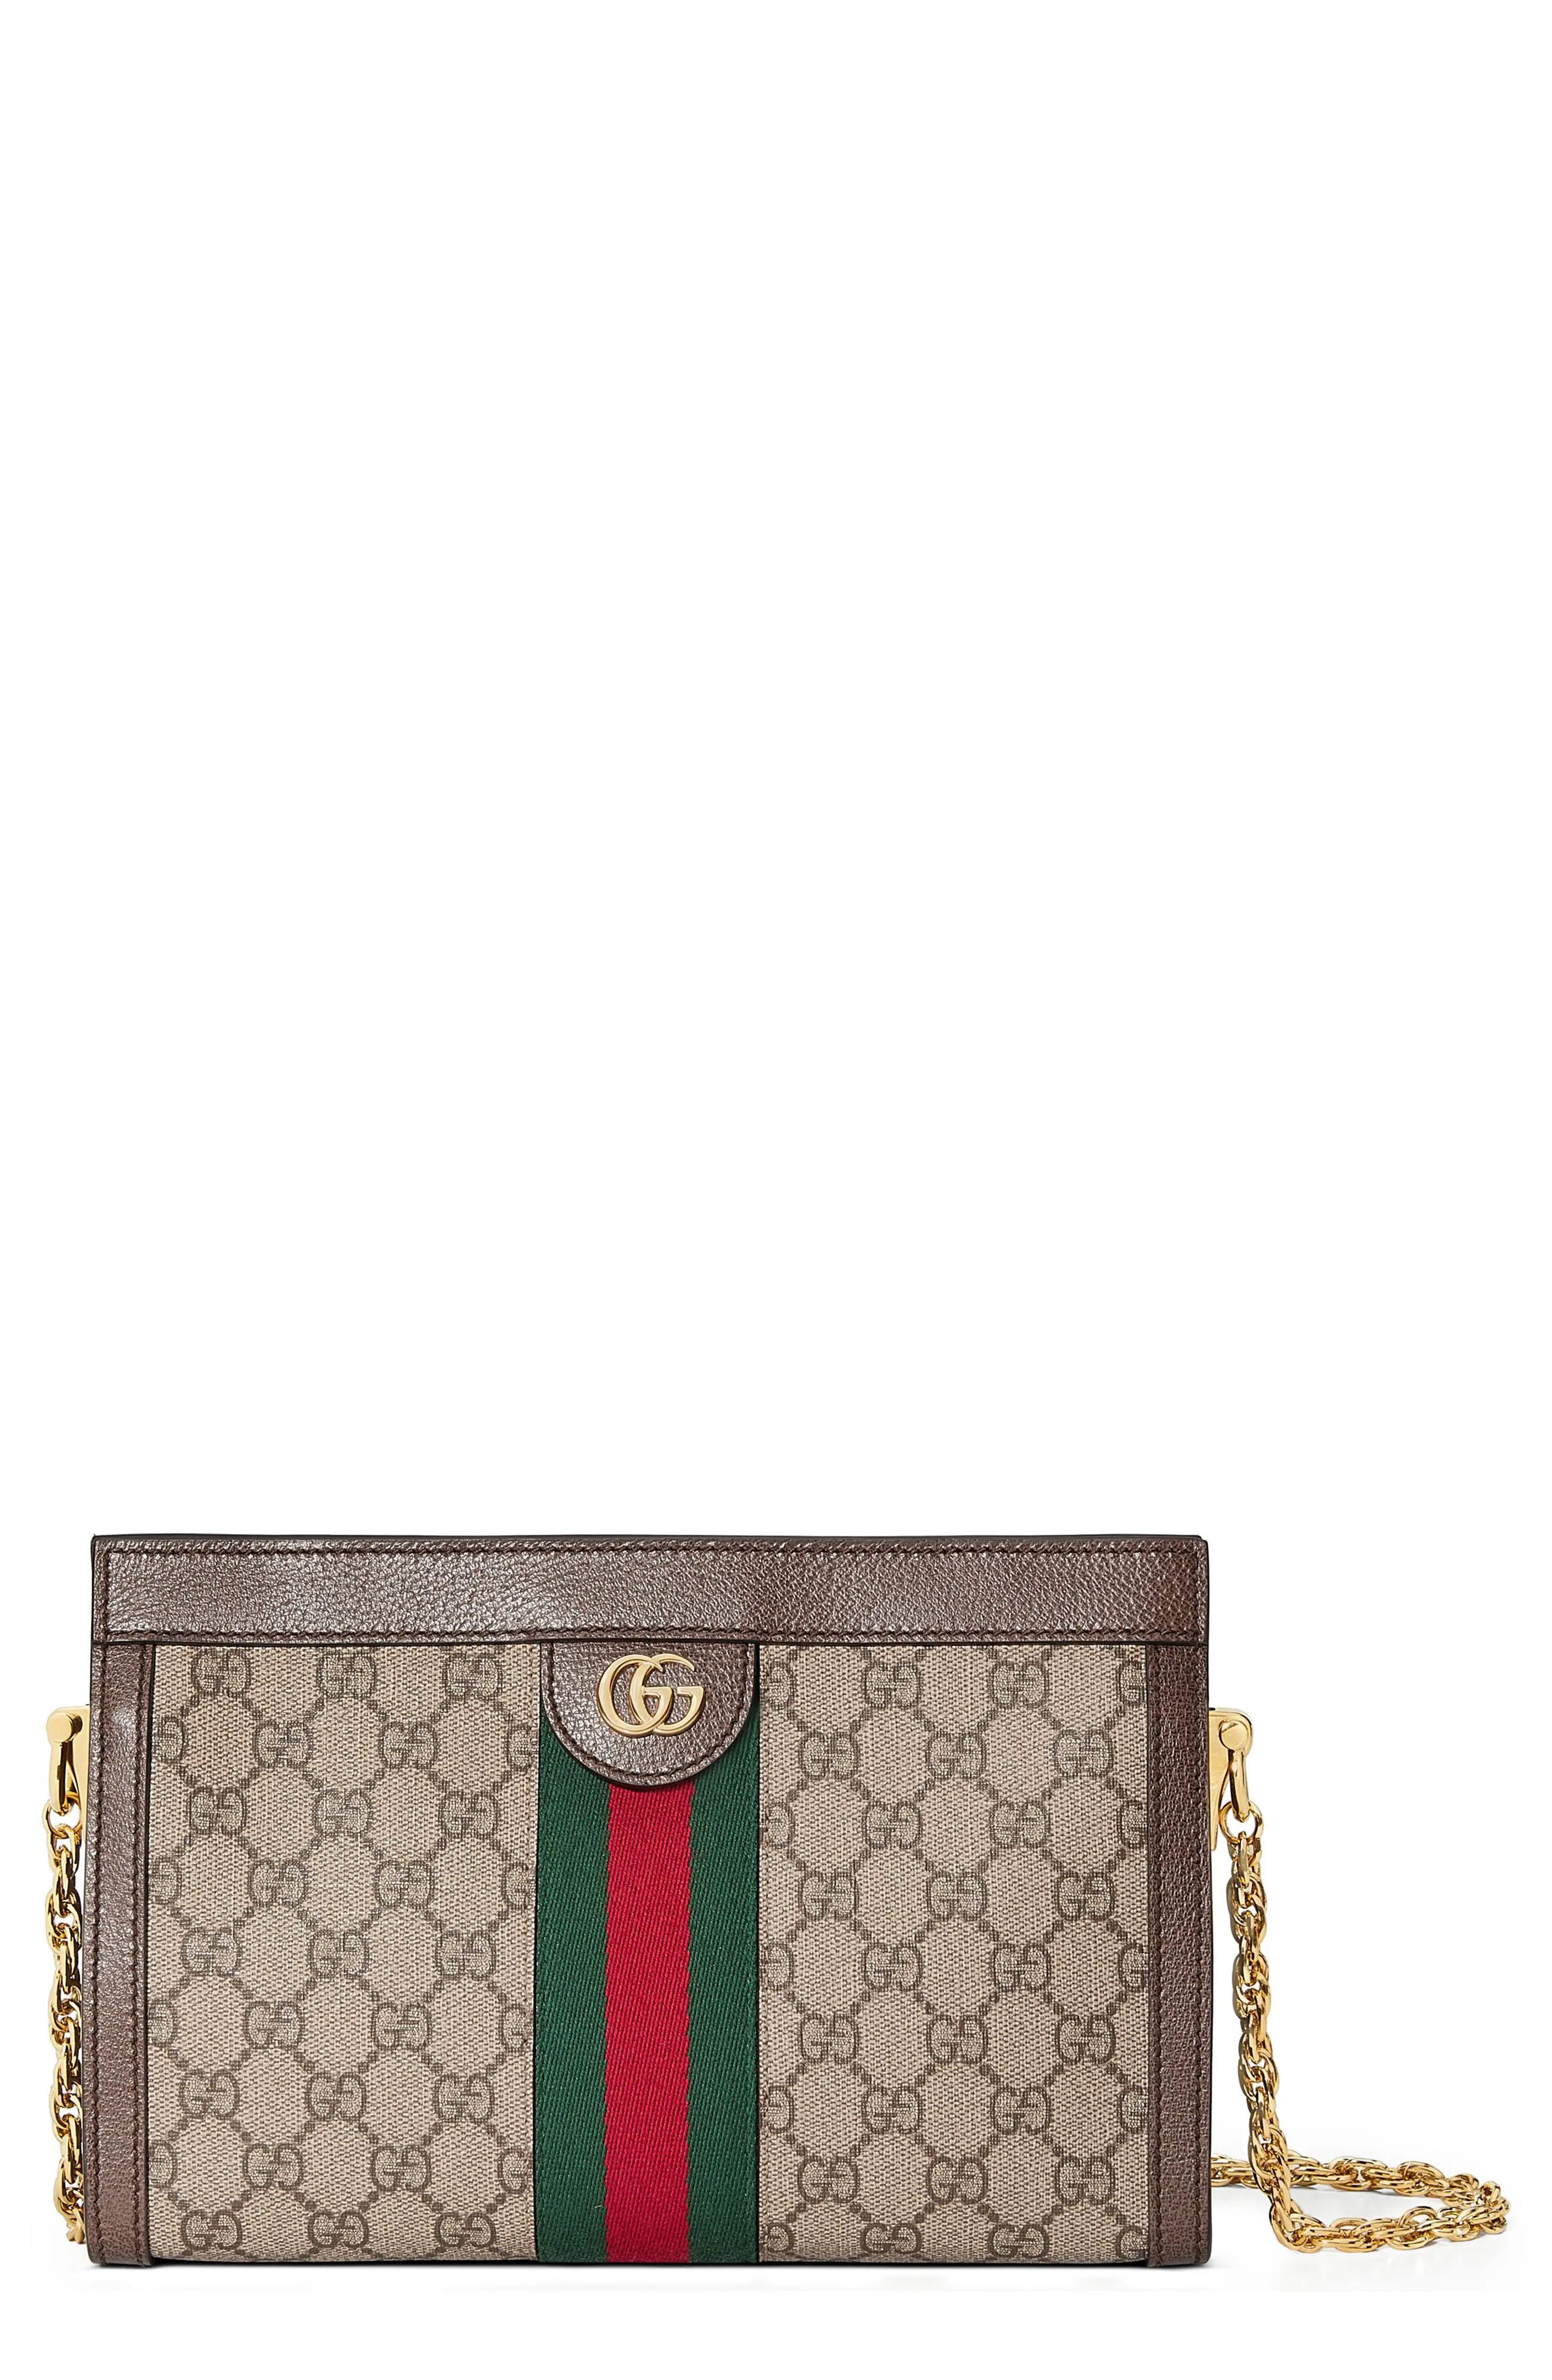 Gucci Small Gg Supreme Shoulder Bag - Beige | Nordstrom